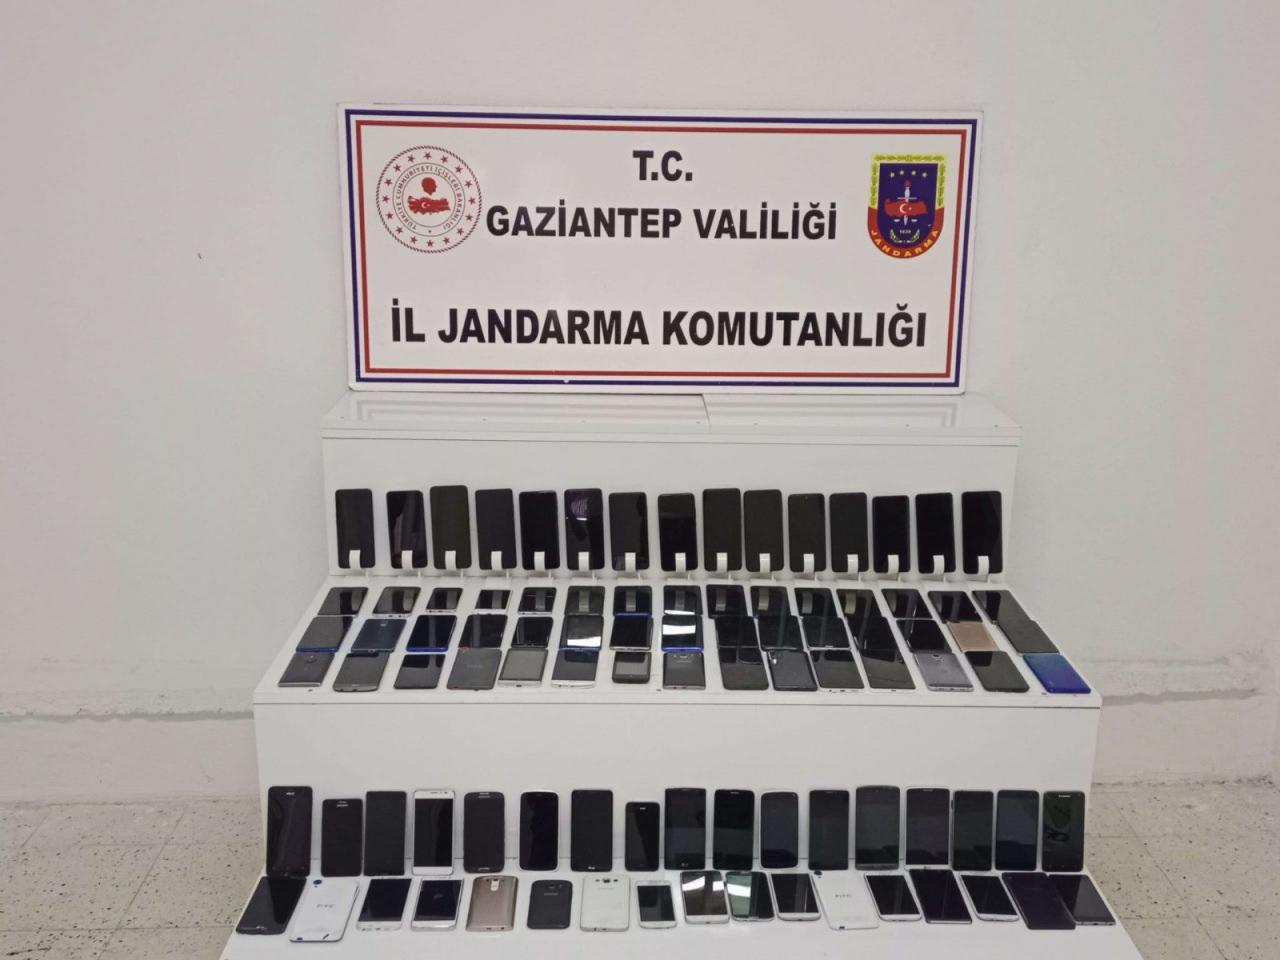 Gaziantep'te 23 milyon liralık kaçakçılık vurgunu! Jandarma göz açtırmadı